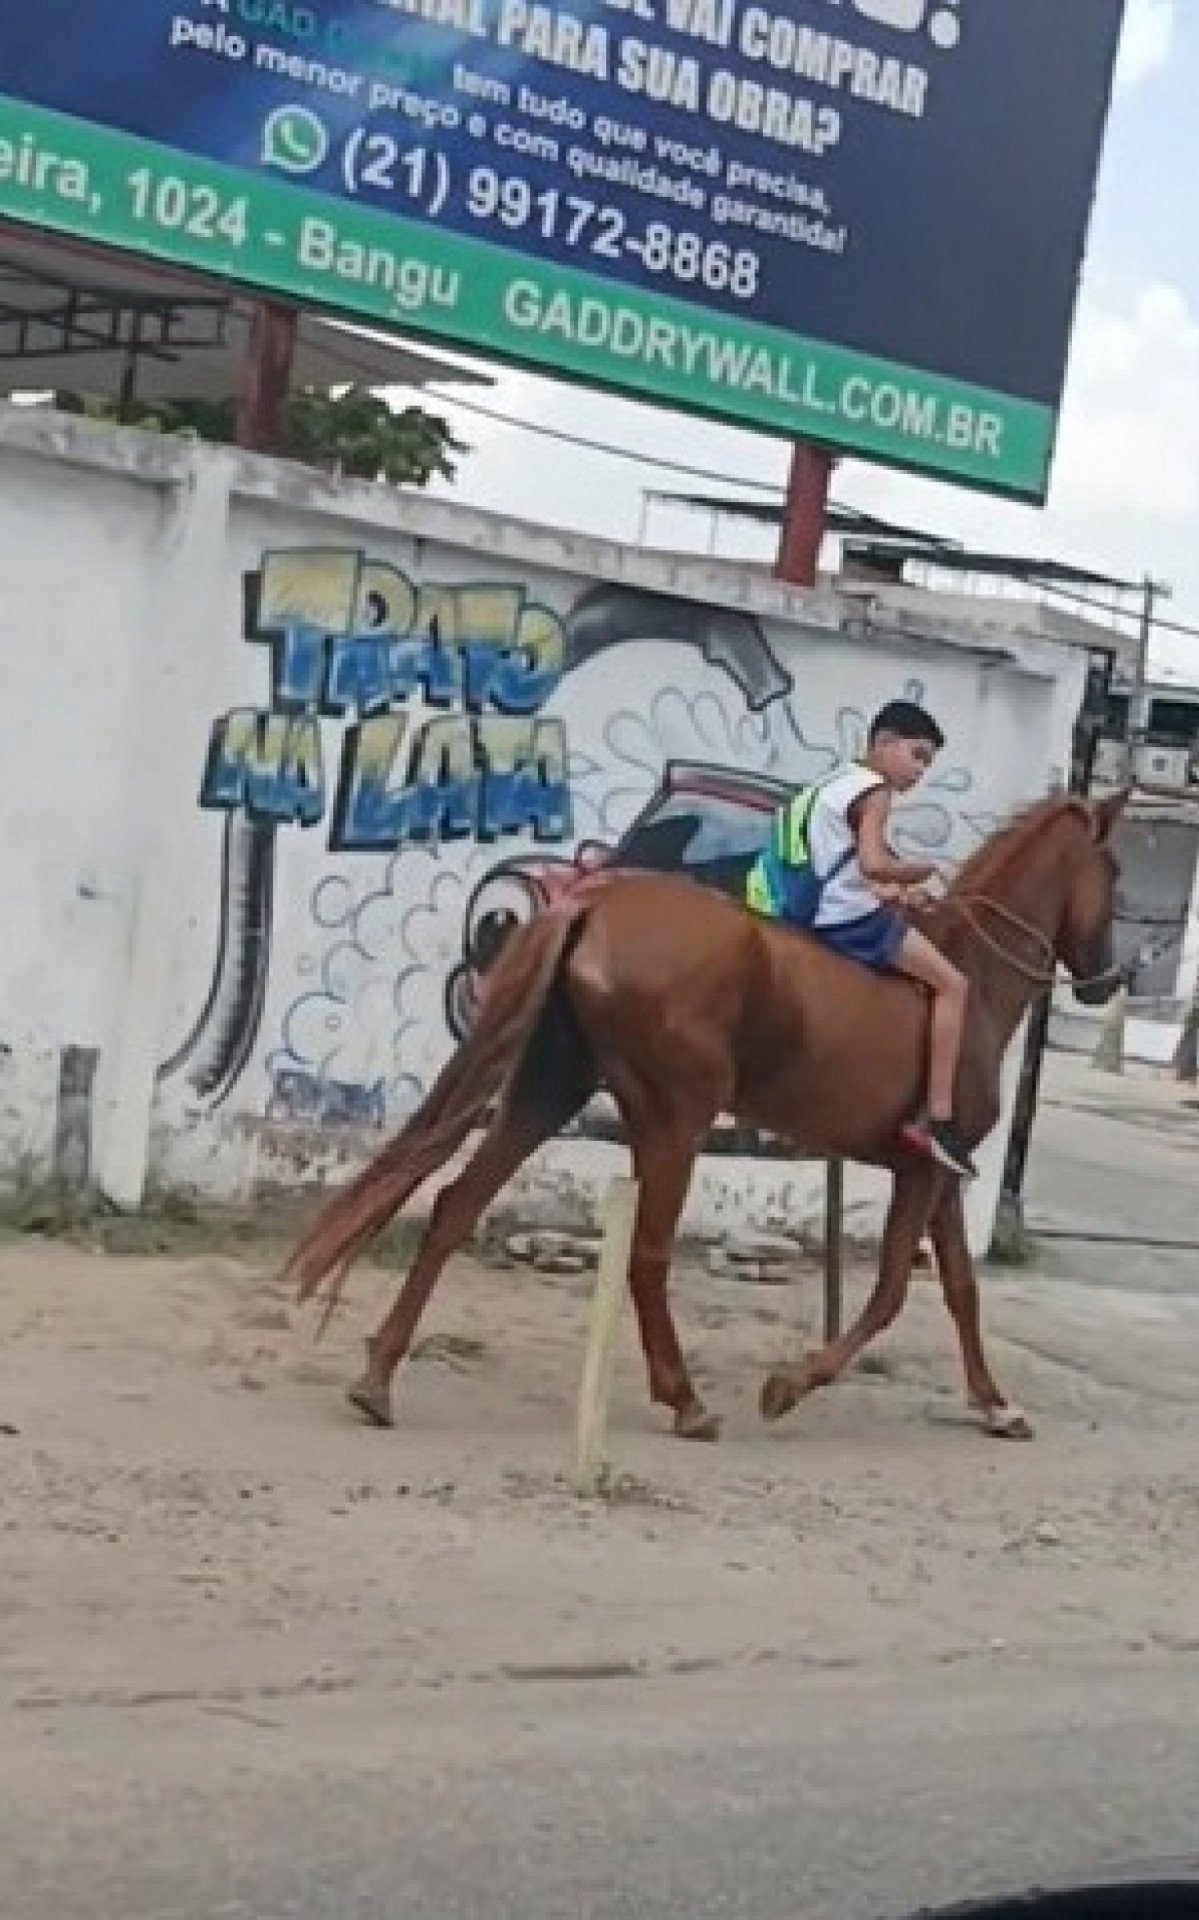 No vídeo, Pedro aparece com uniforme da escola e mochila andando no cavalo pela calçada - Rede Social